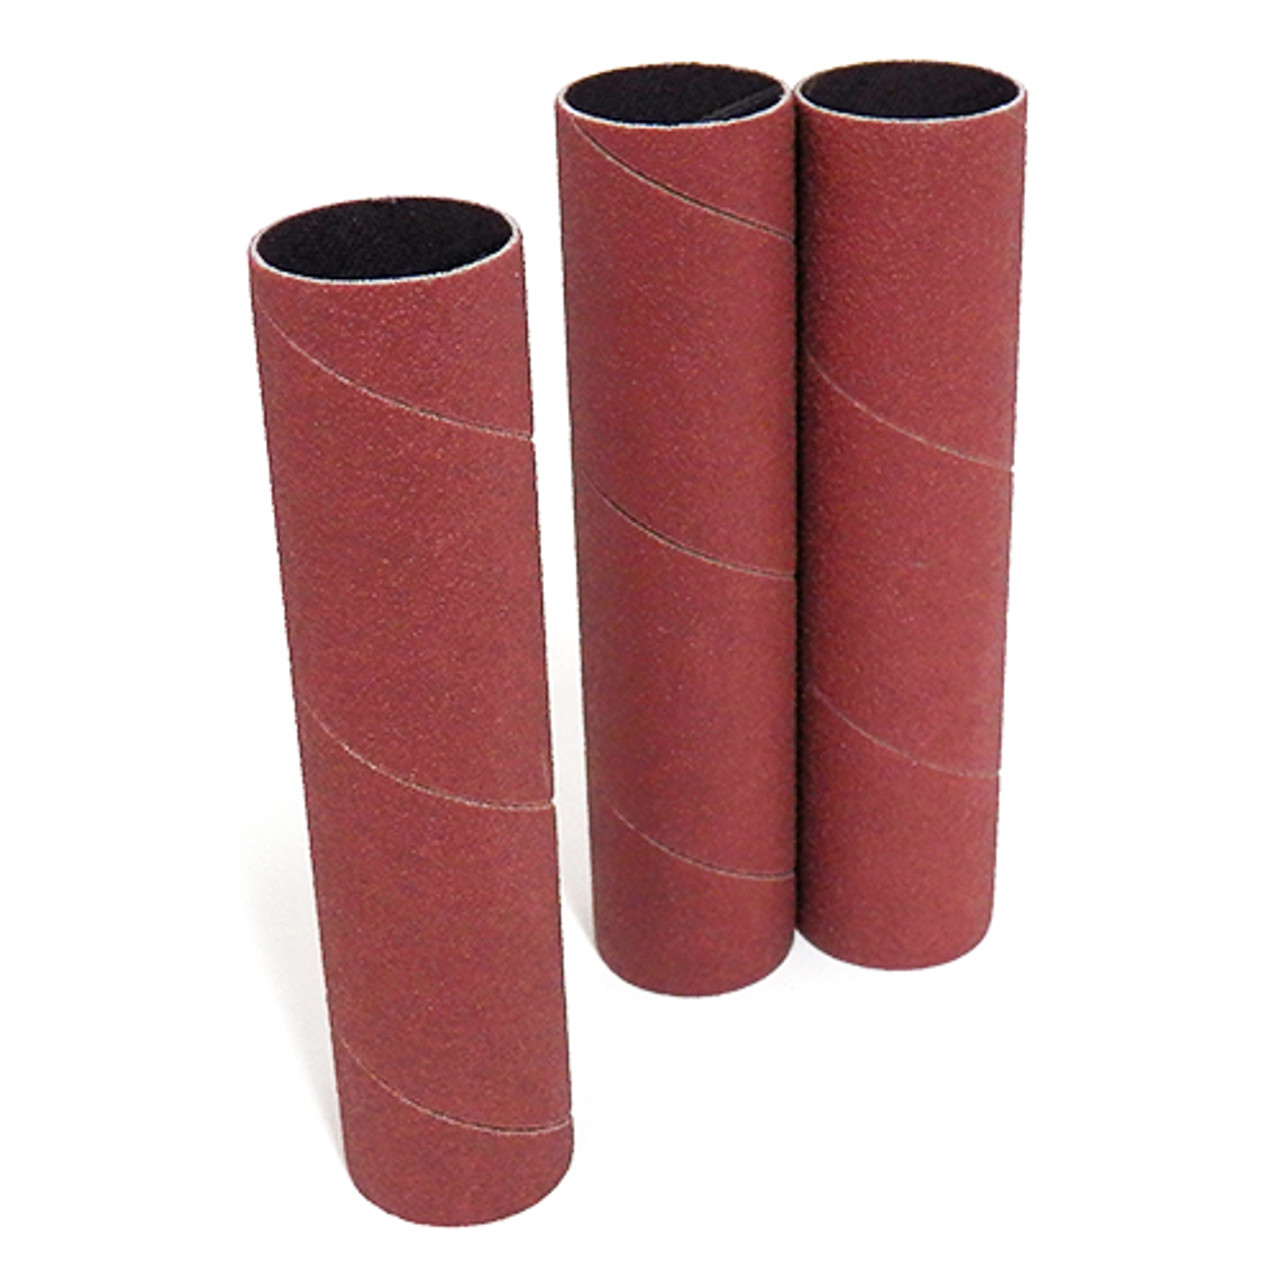 Klingspor Abrasives Aluminum Oxide Sanding Sleeves, 1"X 4-1/2" 60 Grit, 3pk